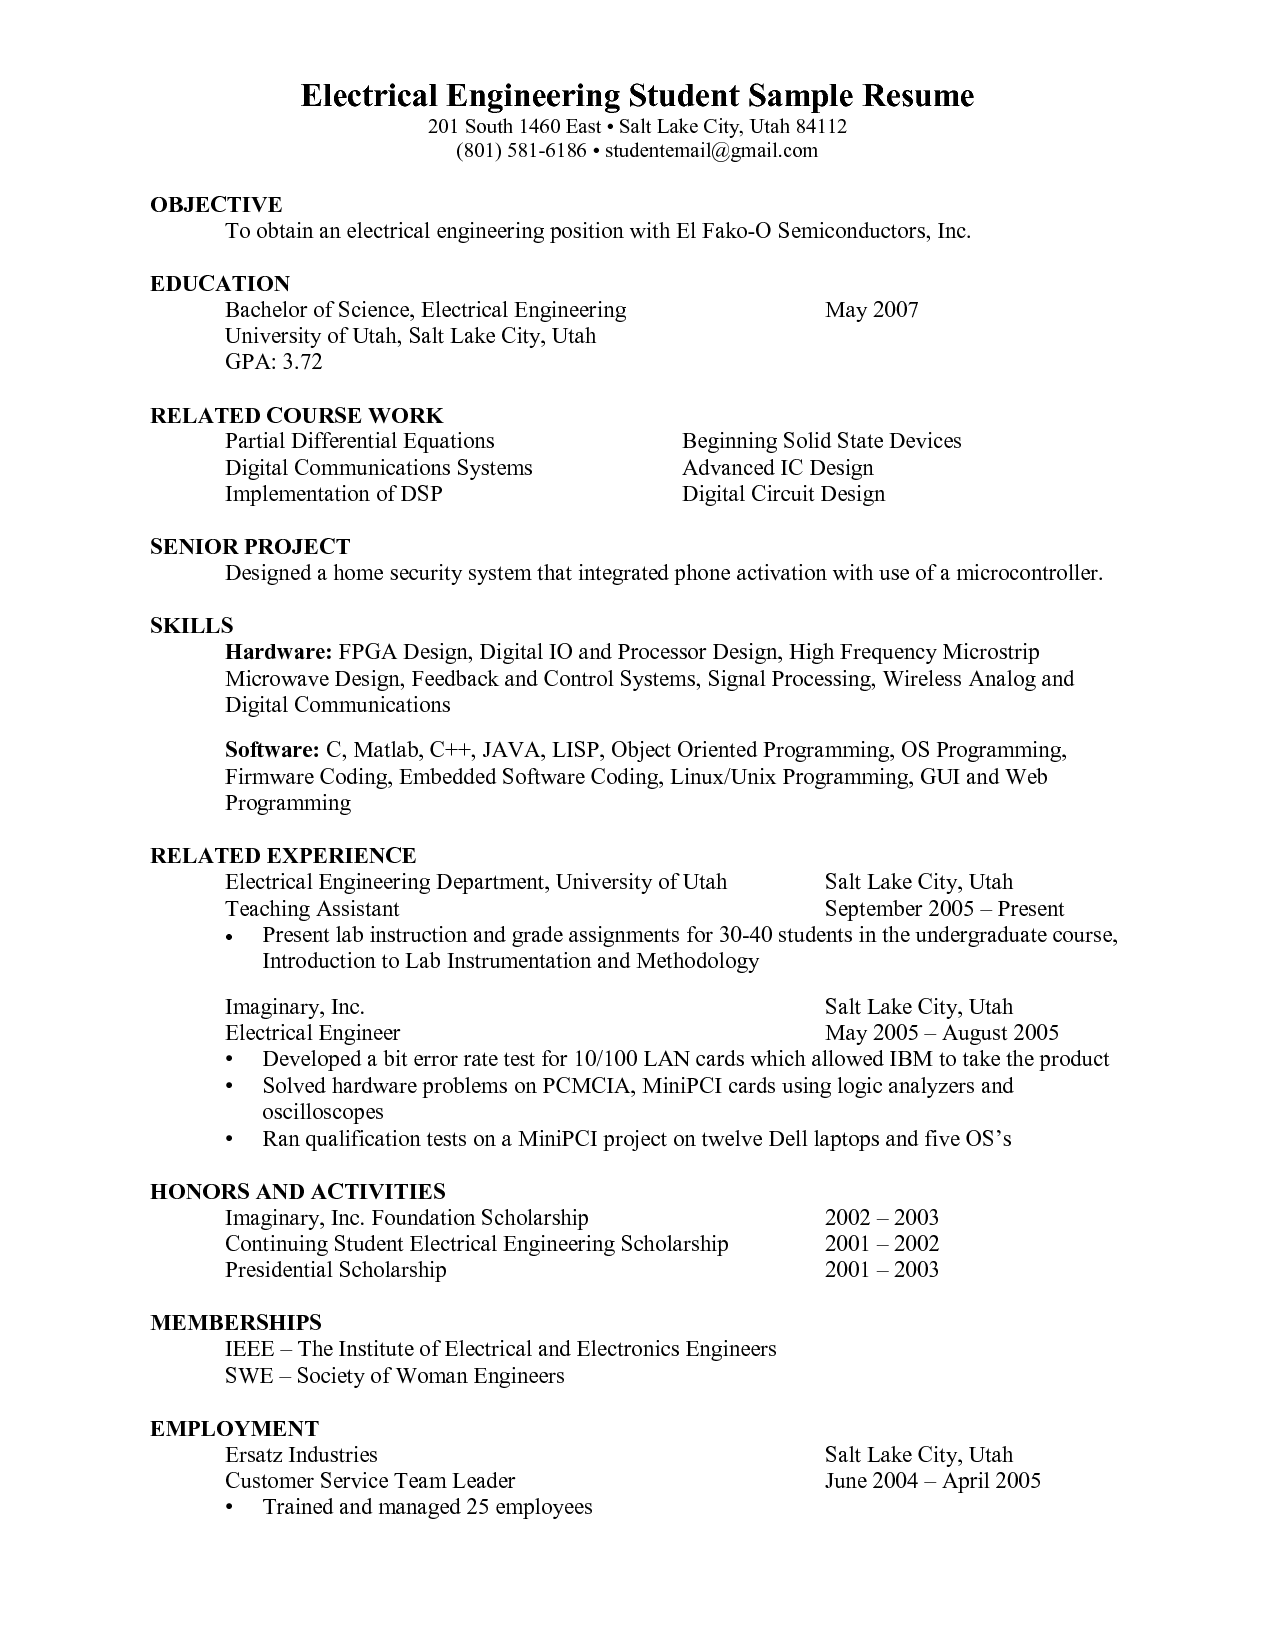 Engineer phd resume